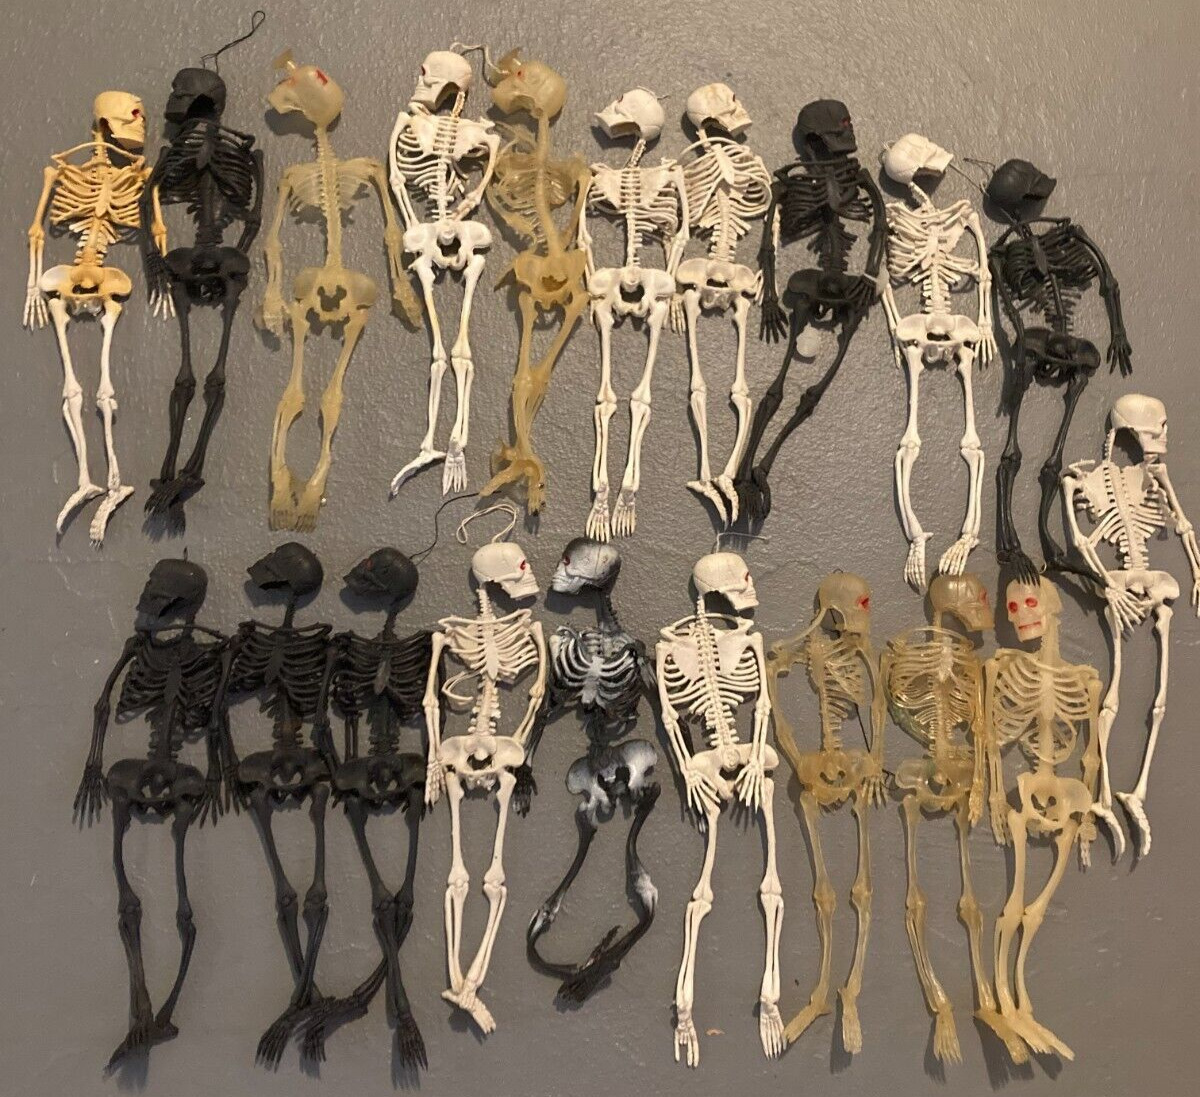 VTG Rubber Hanging Skeletons Halloween 1980's Jiggler 13” LOT 0F 20-HARD TO FIND